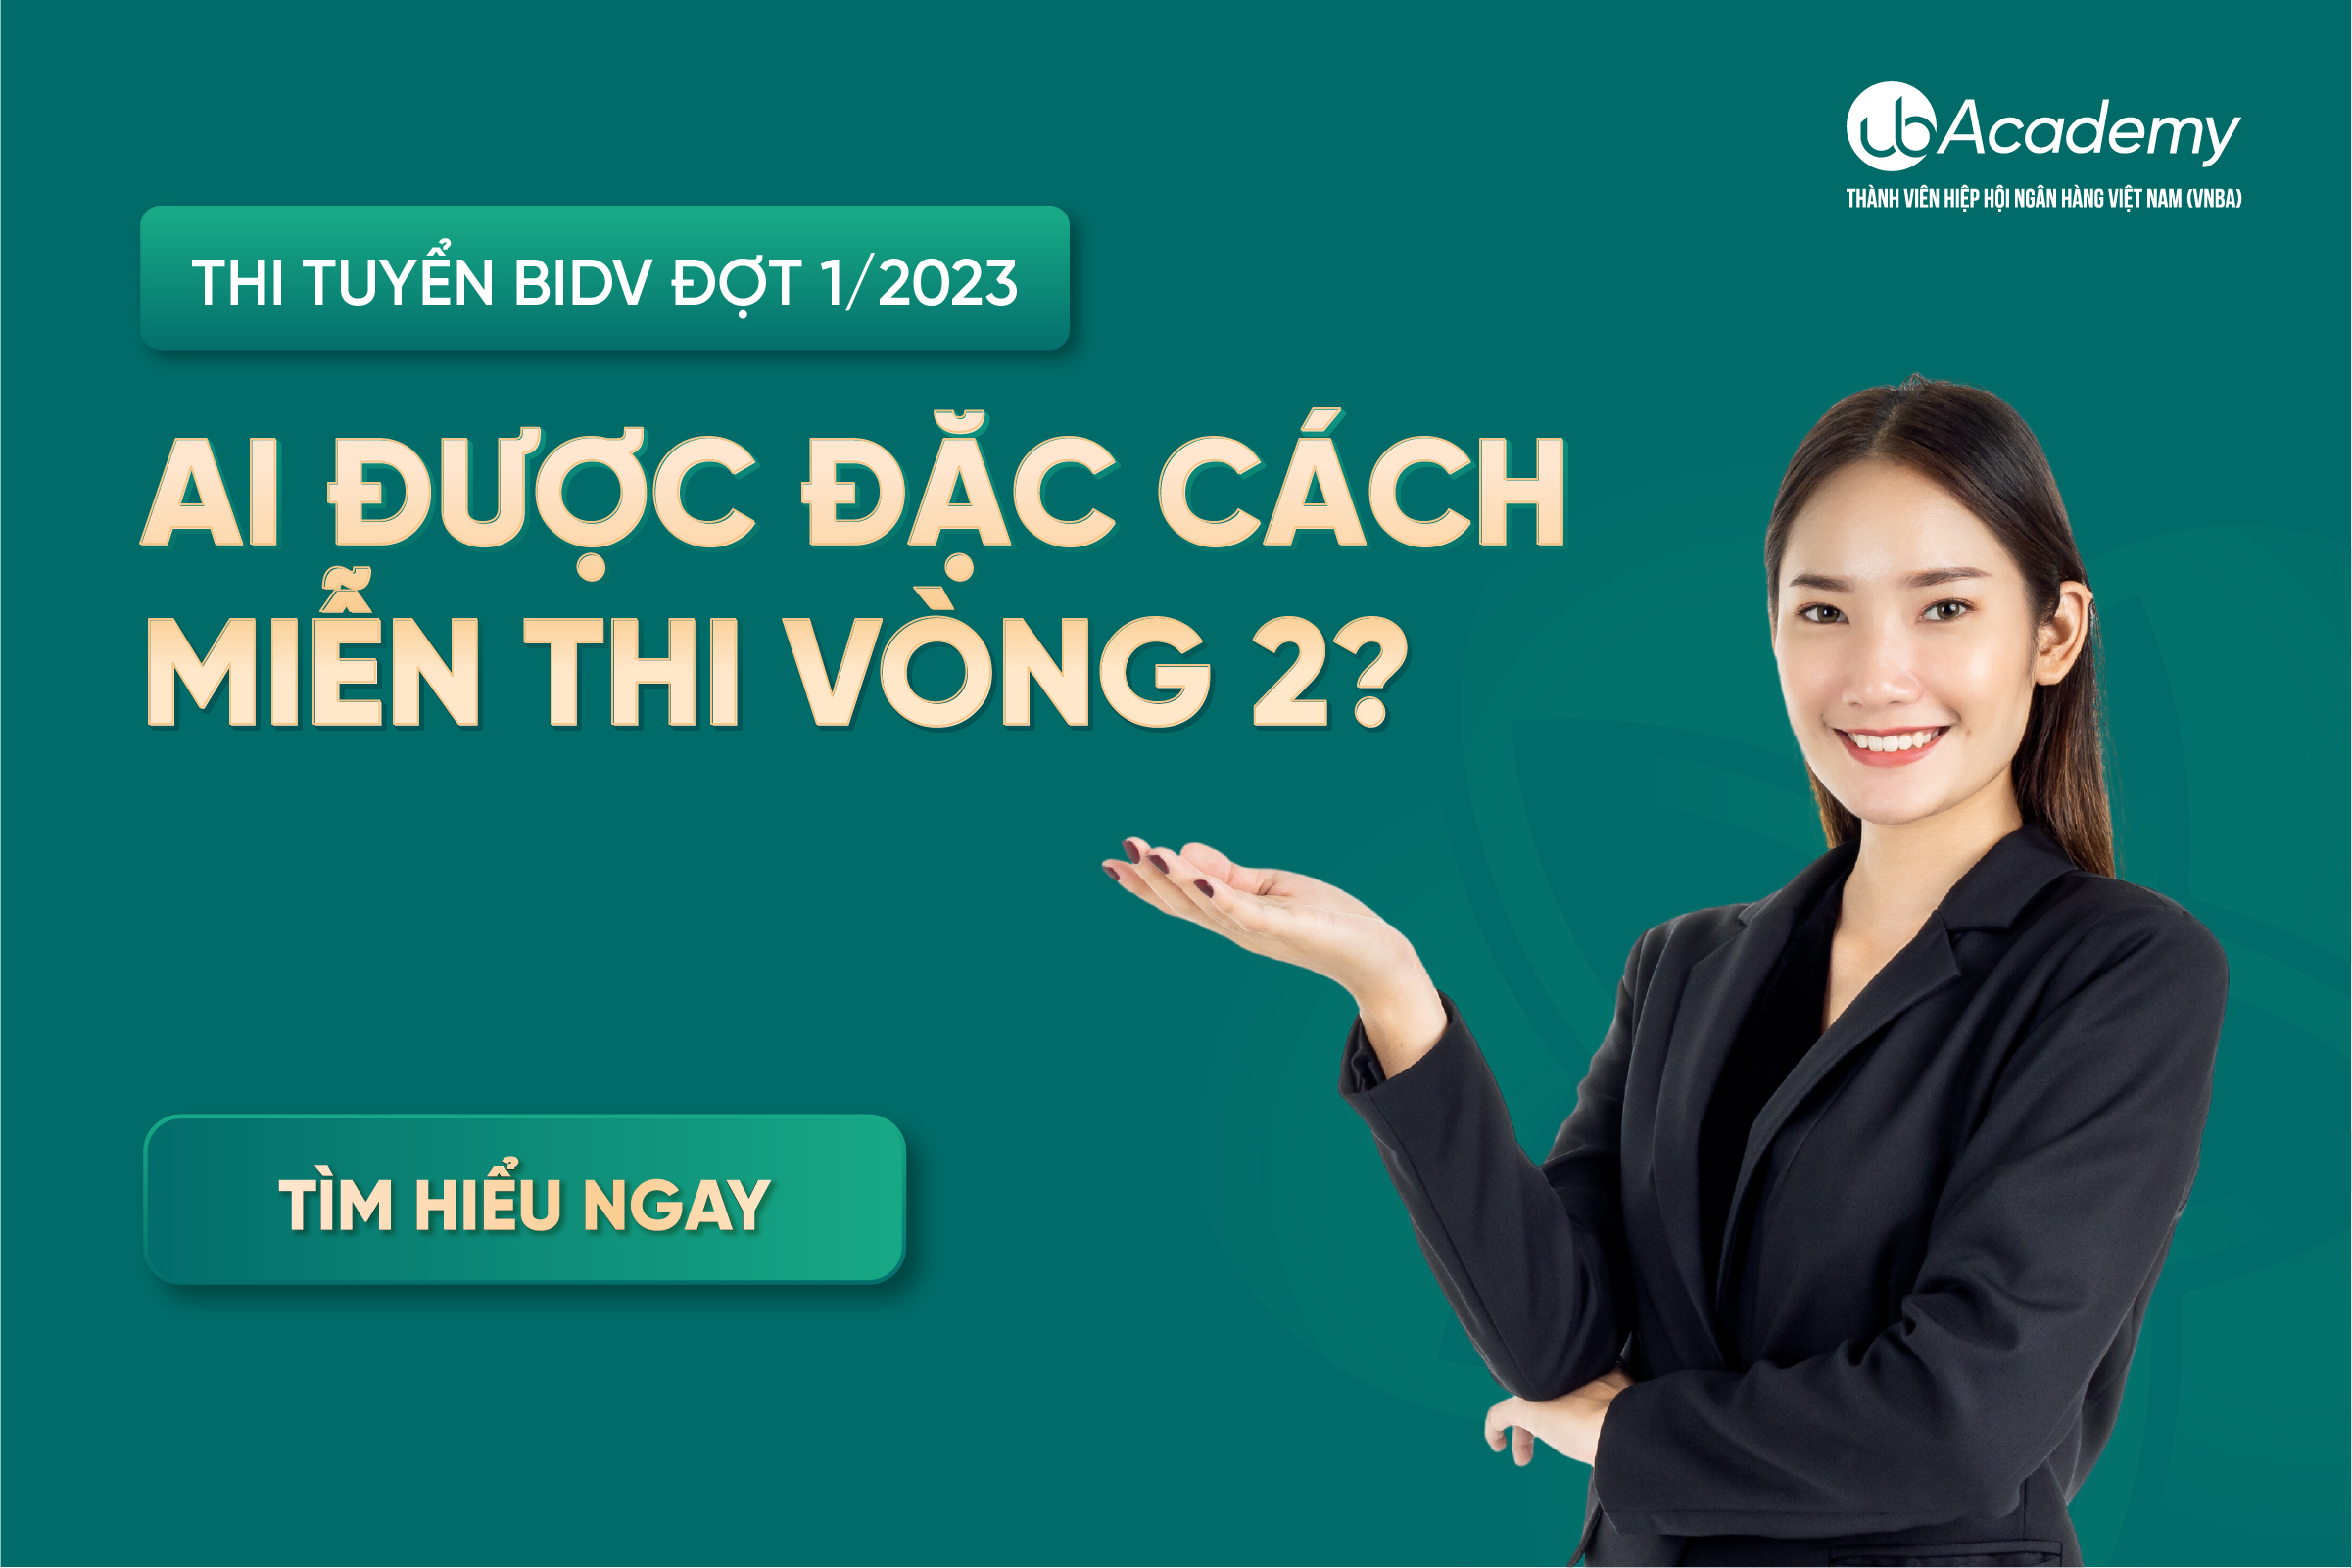 Thi tuyển BIDV Đợt 1/2023 - Ai được đặc cách miễn thi vòng 2?